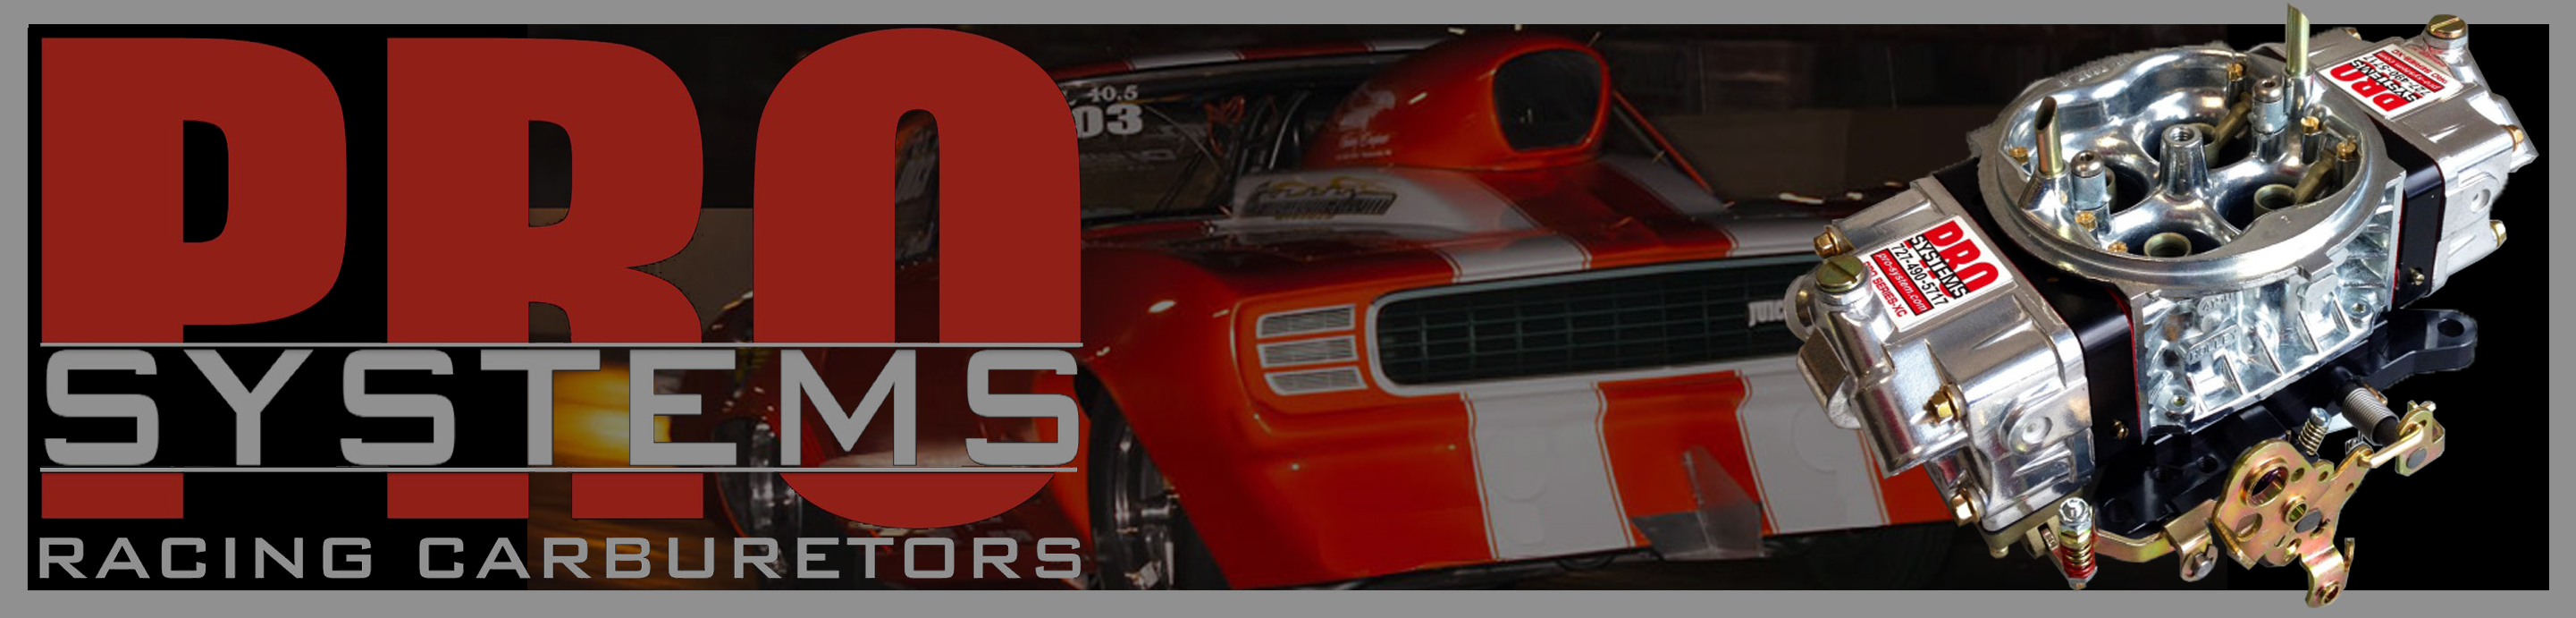 Pro Systems Racing Carburetors Logo